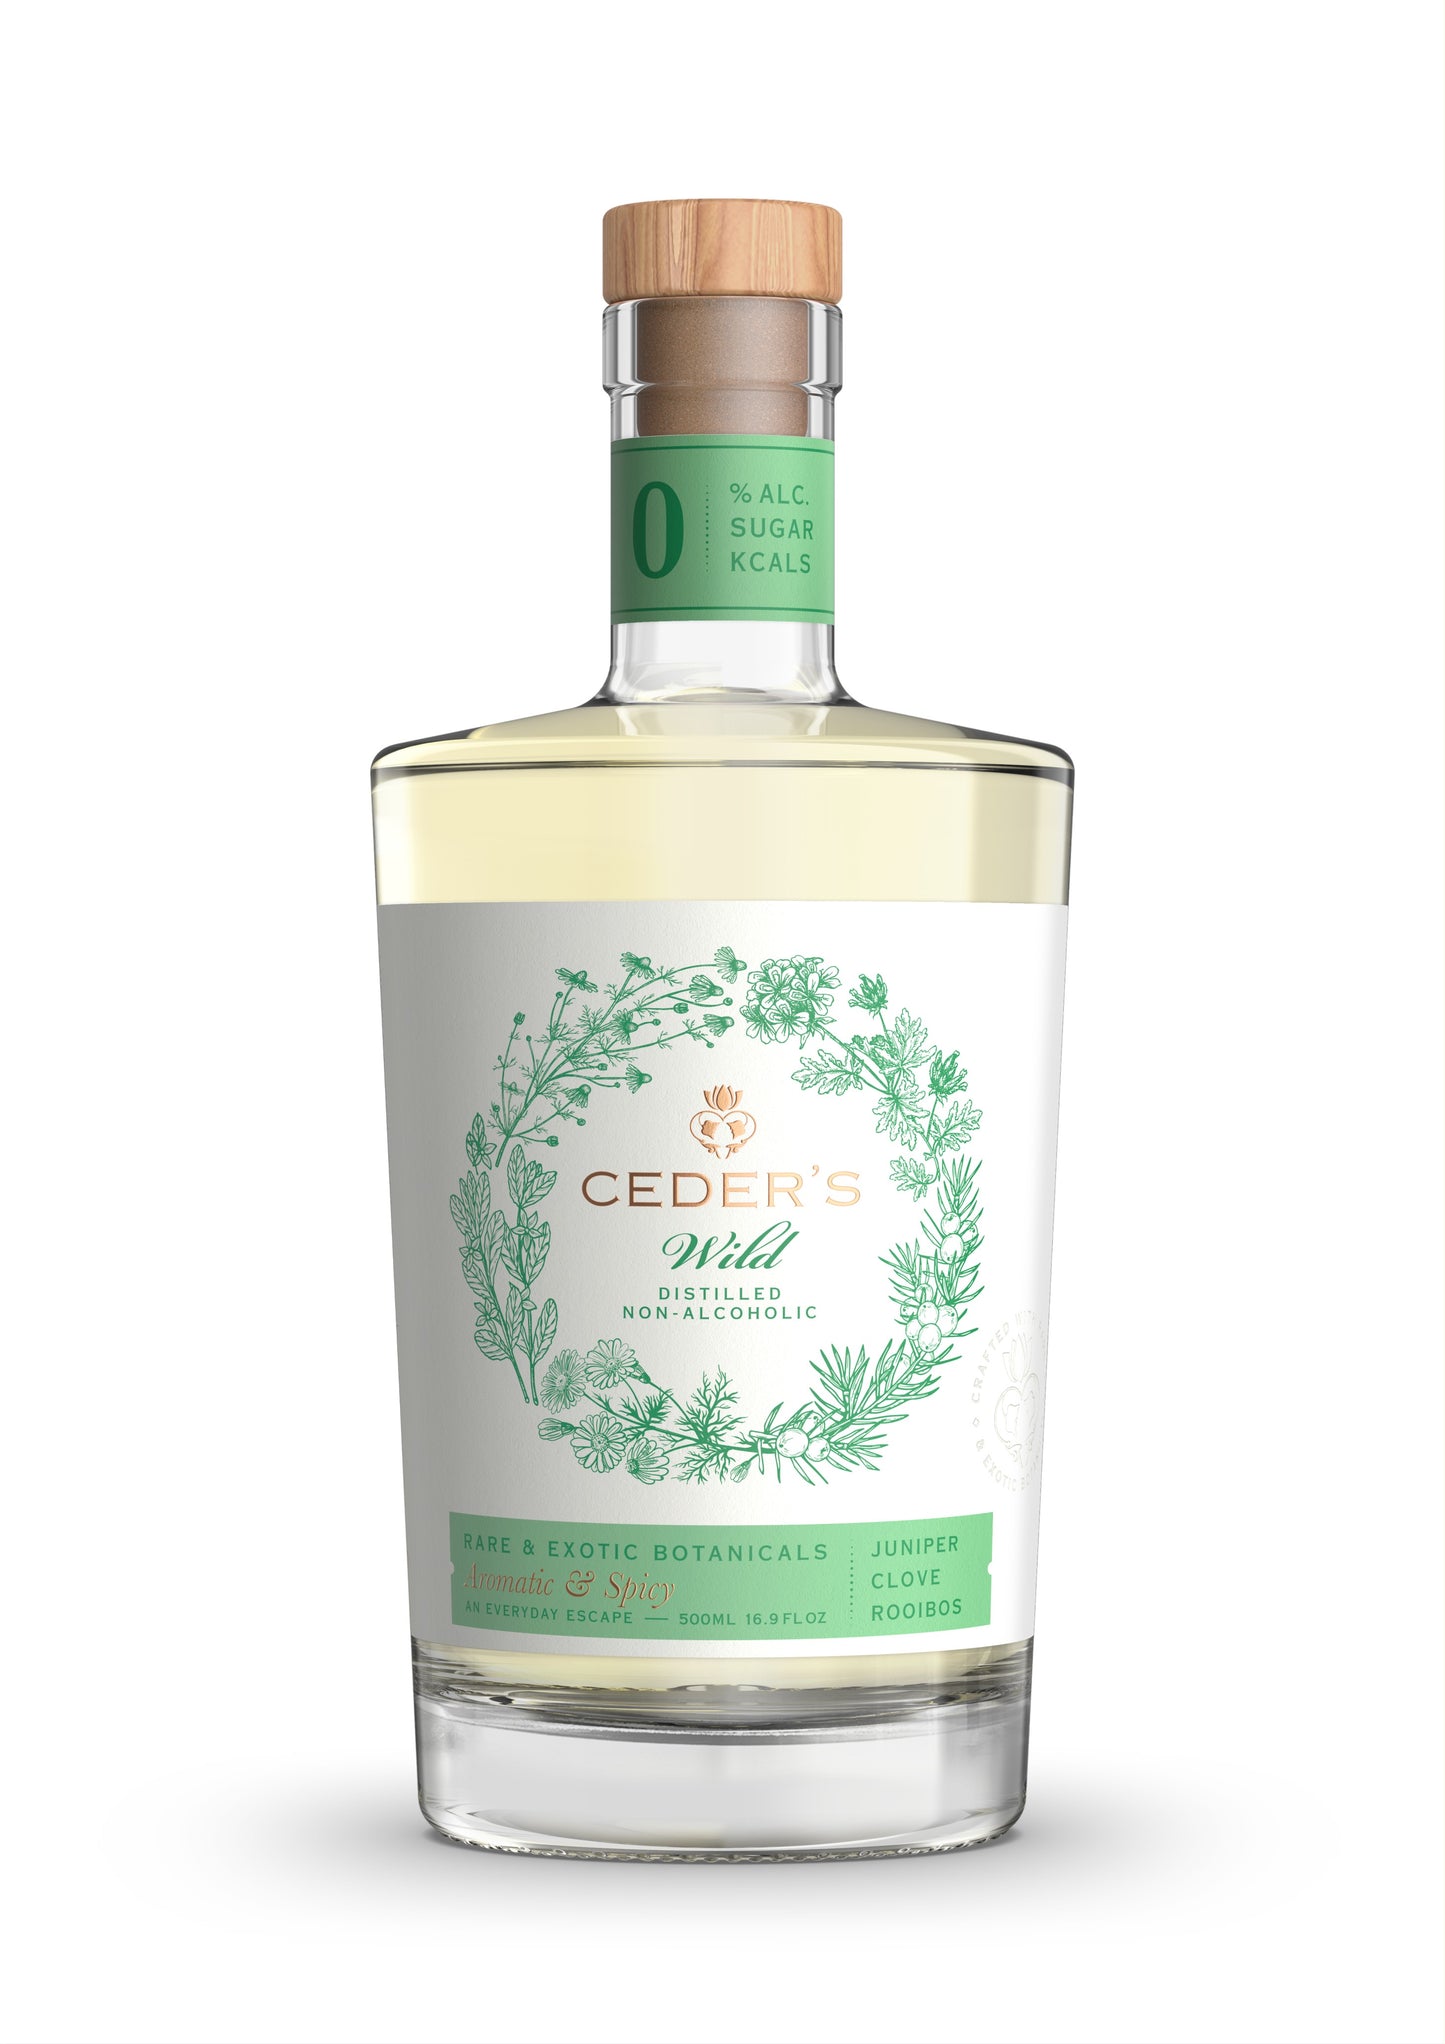 Ceder's - Wild Non-Alcoholic Gin